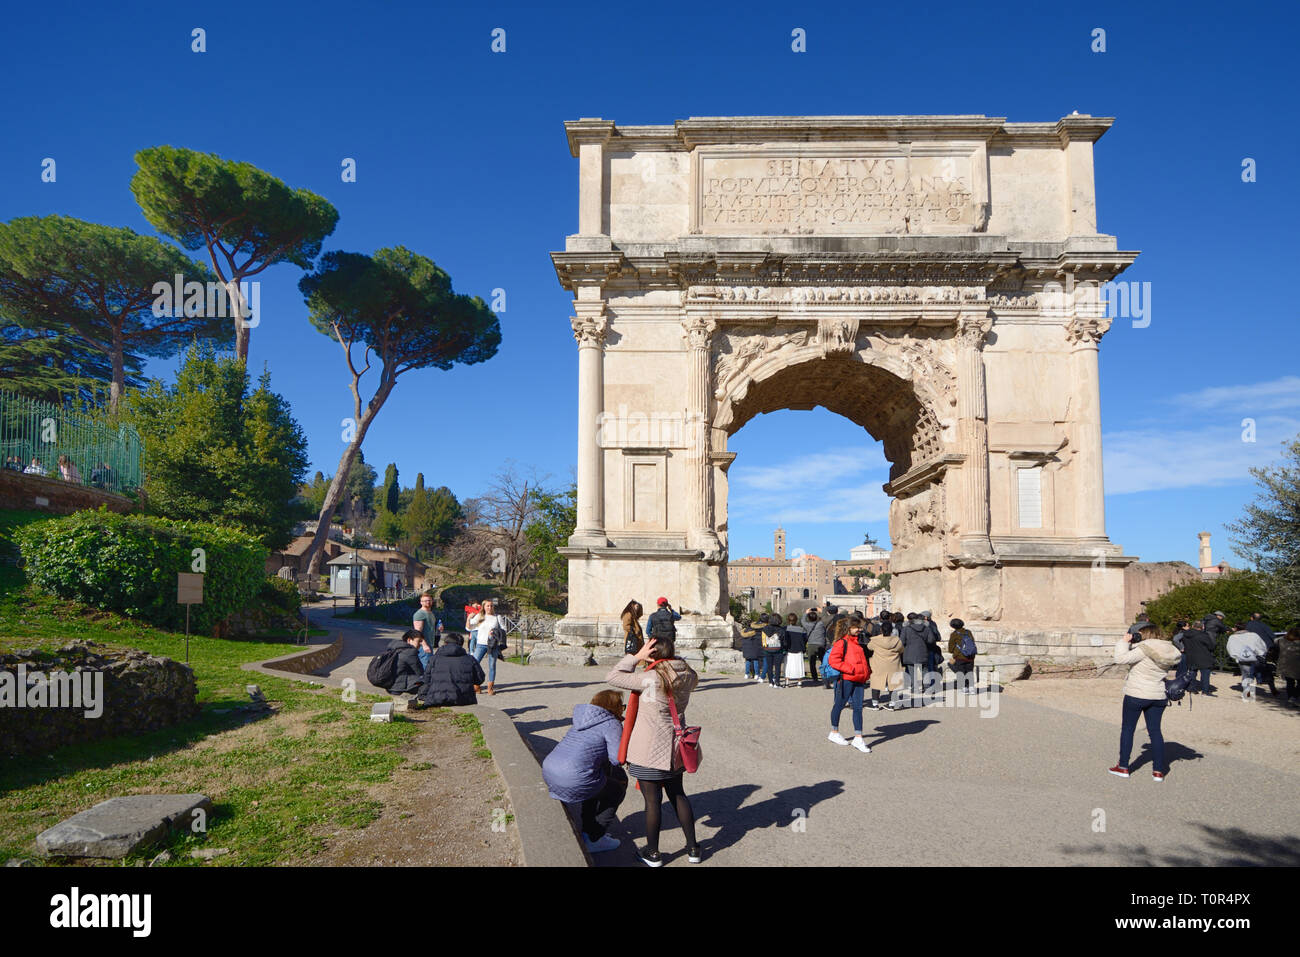 Touristen Rund um den Triumphbogen von Titus cAD 82 auf der Via Sacra römische Straße, Forum Romanum, Rom Italien. Feiert Sieg Roms über Jerusalem 70 AD Stockfoto